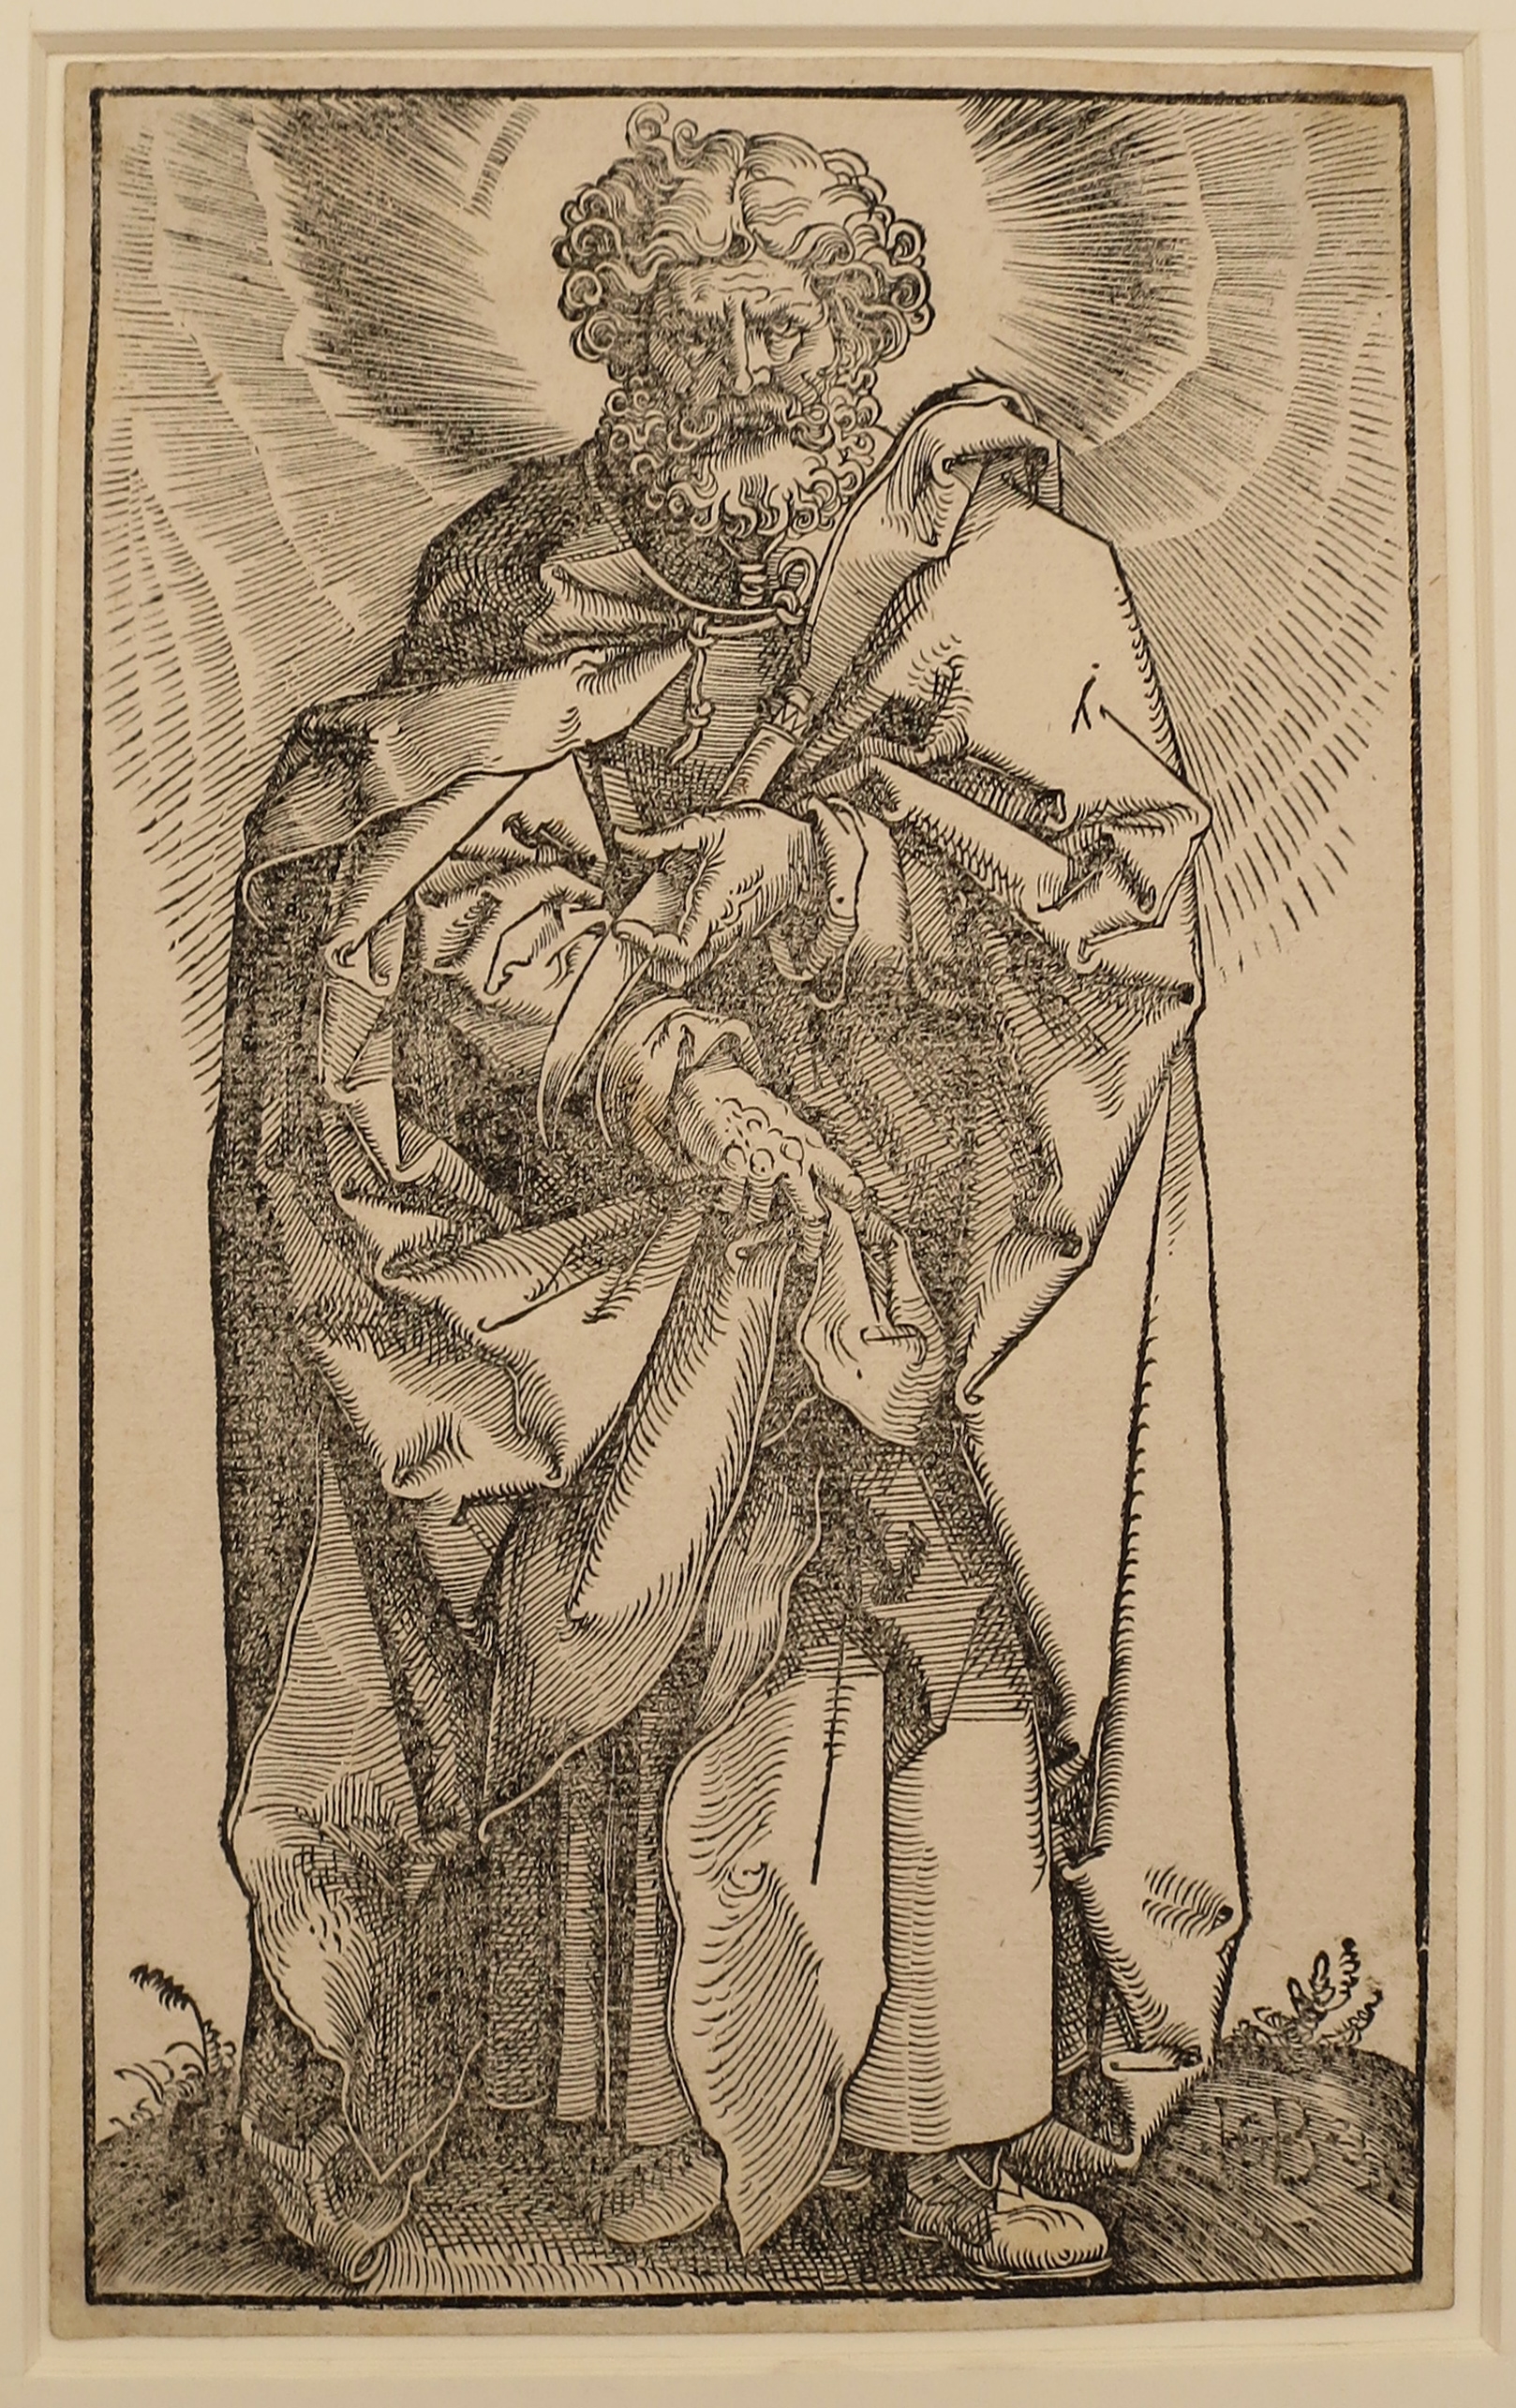 St. Bartolomew by Hans Baldung Grien, 1519